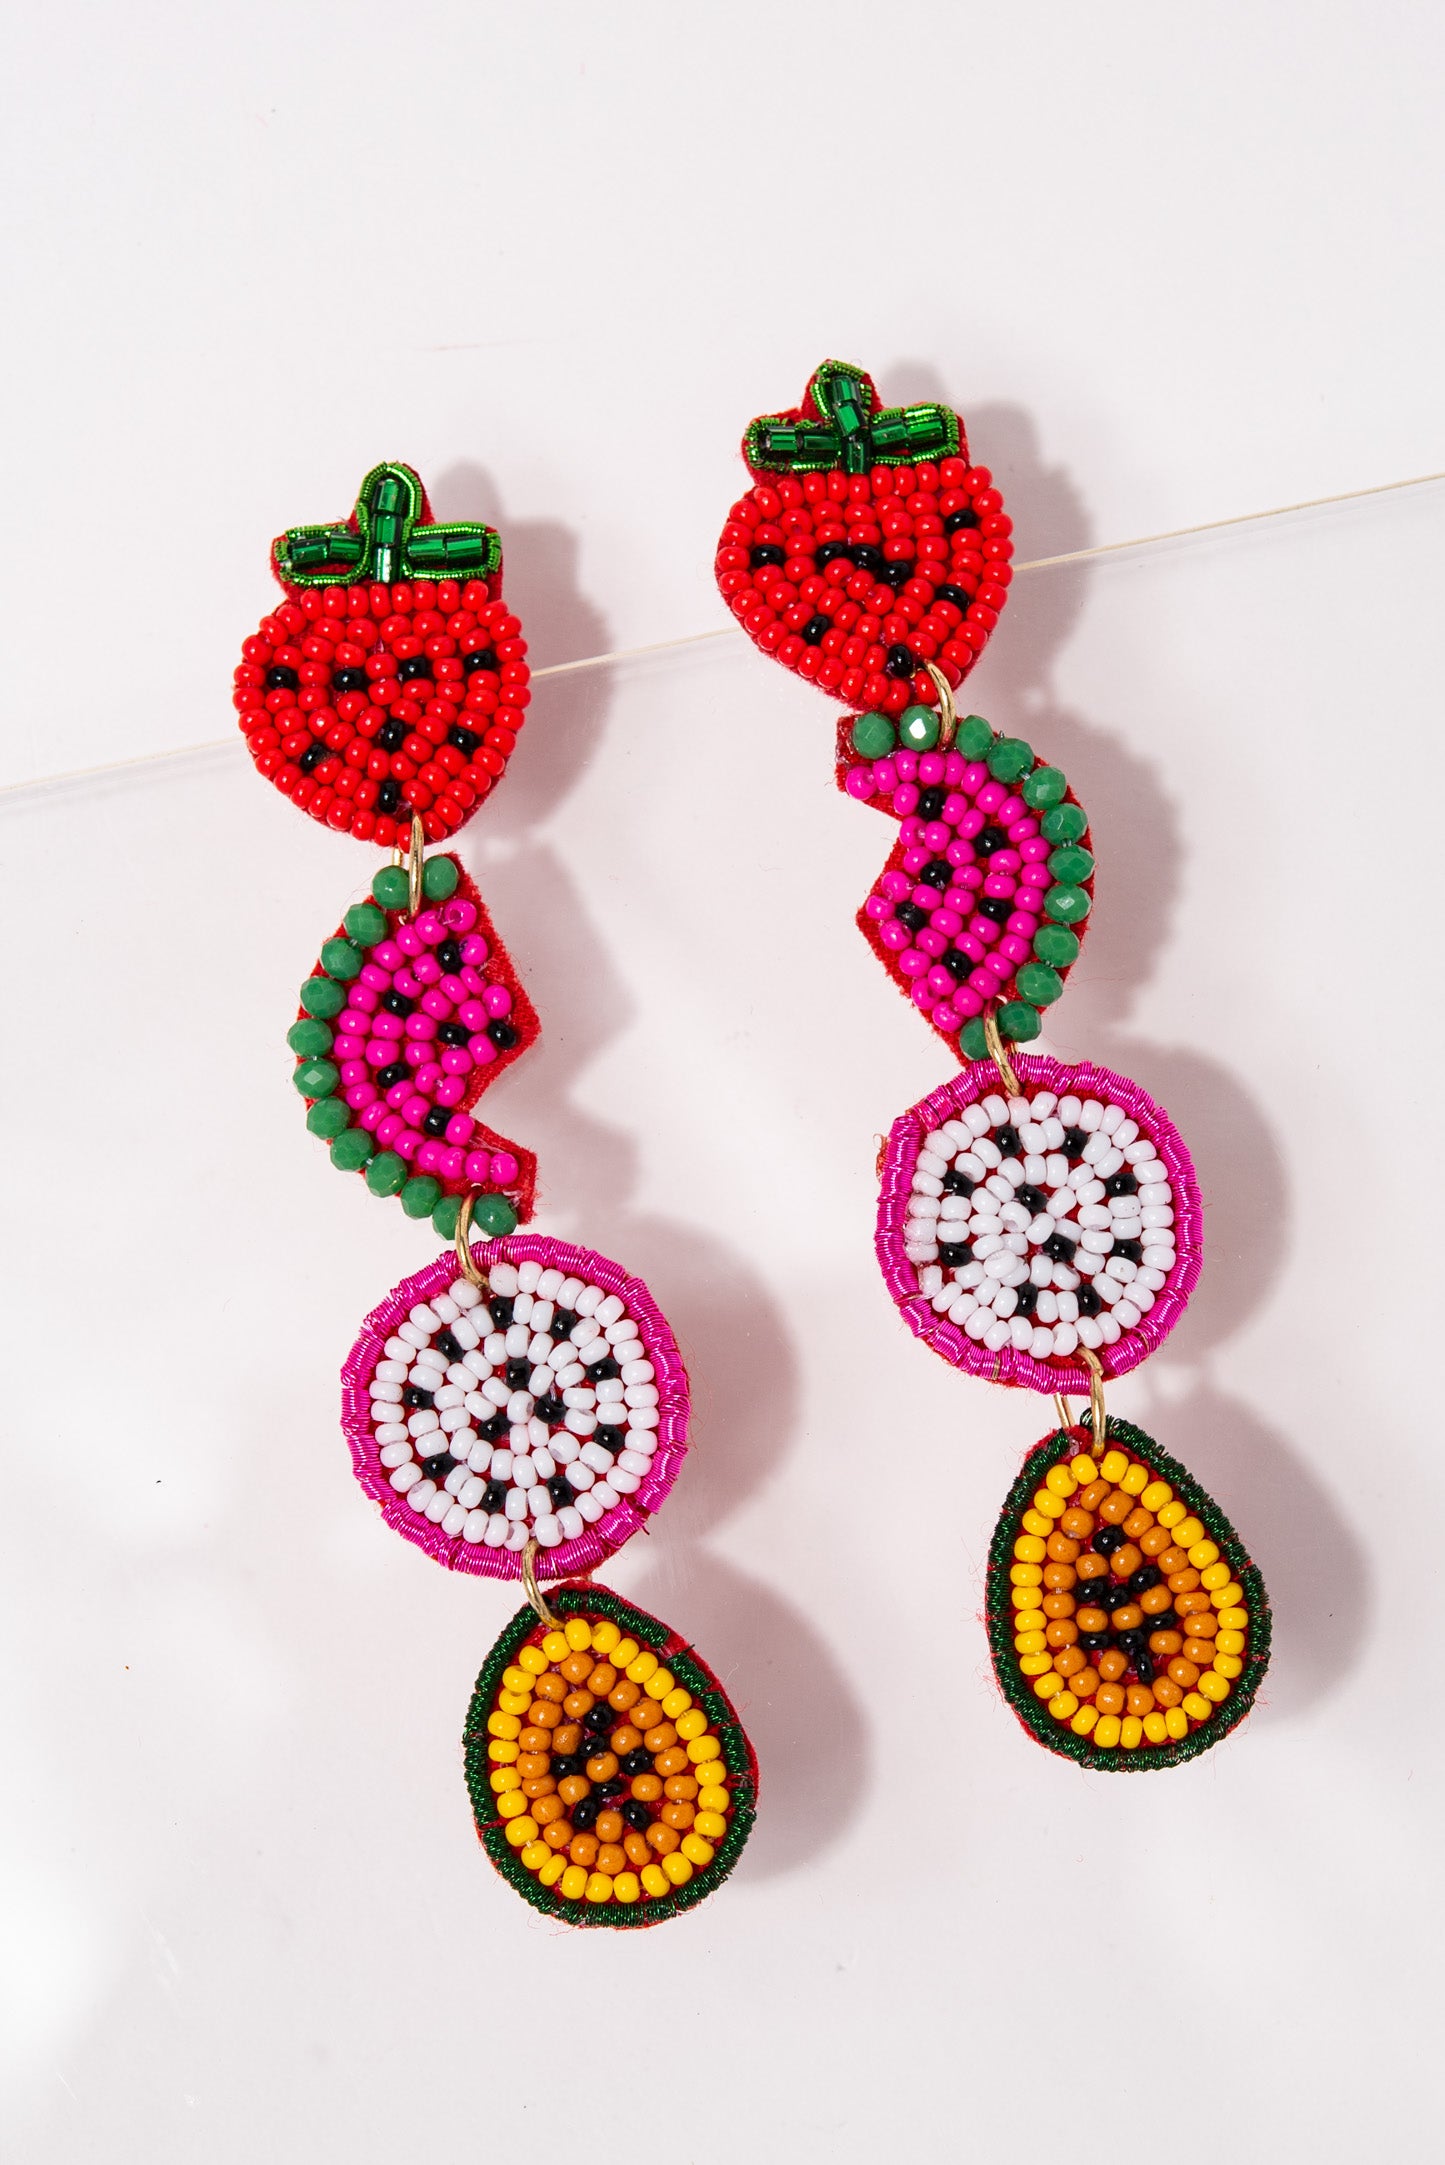 Franky Fruit Dangle Beaded Earrings - Multi Color Red